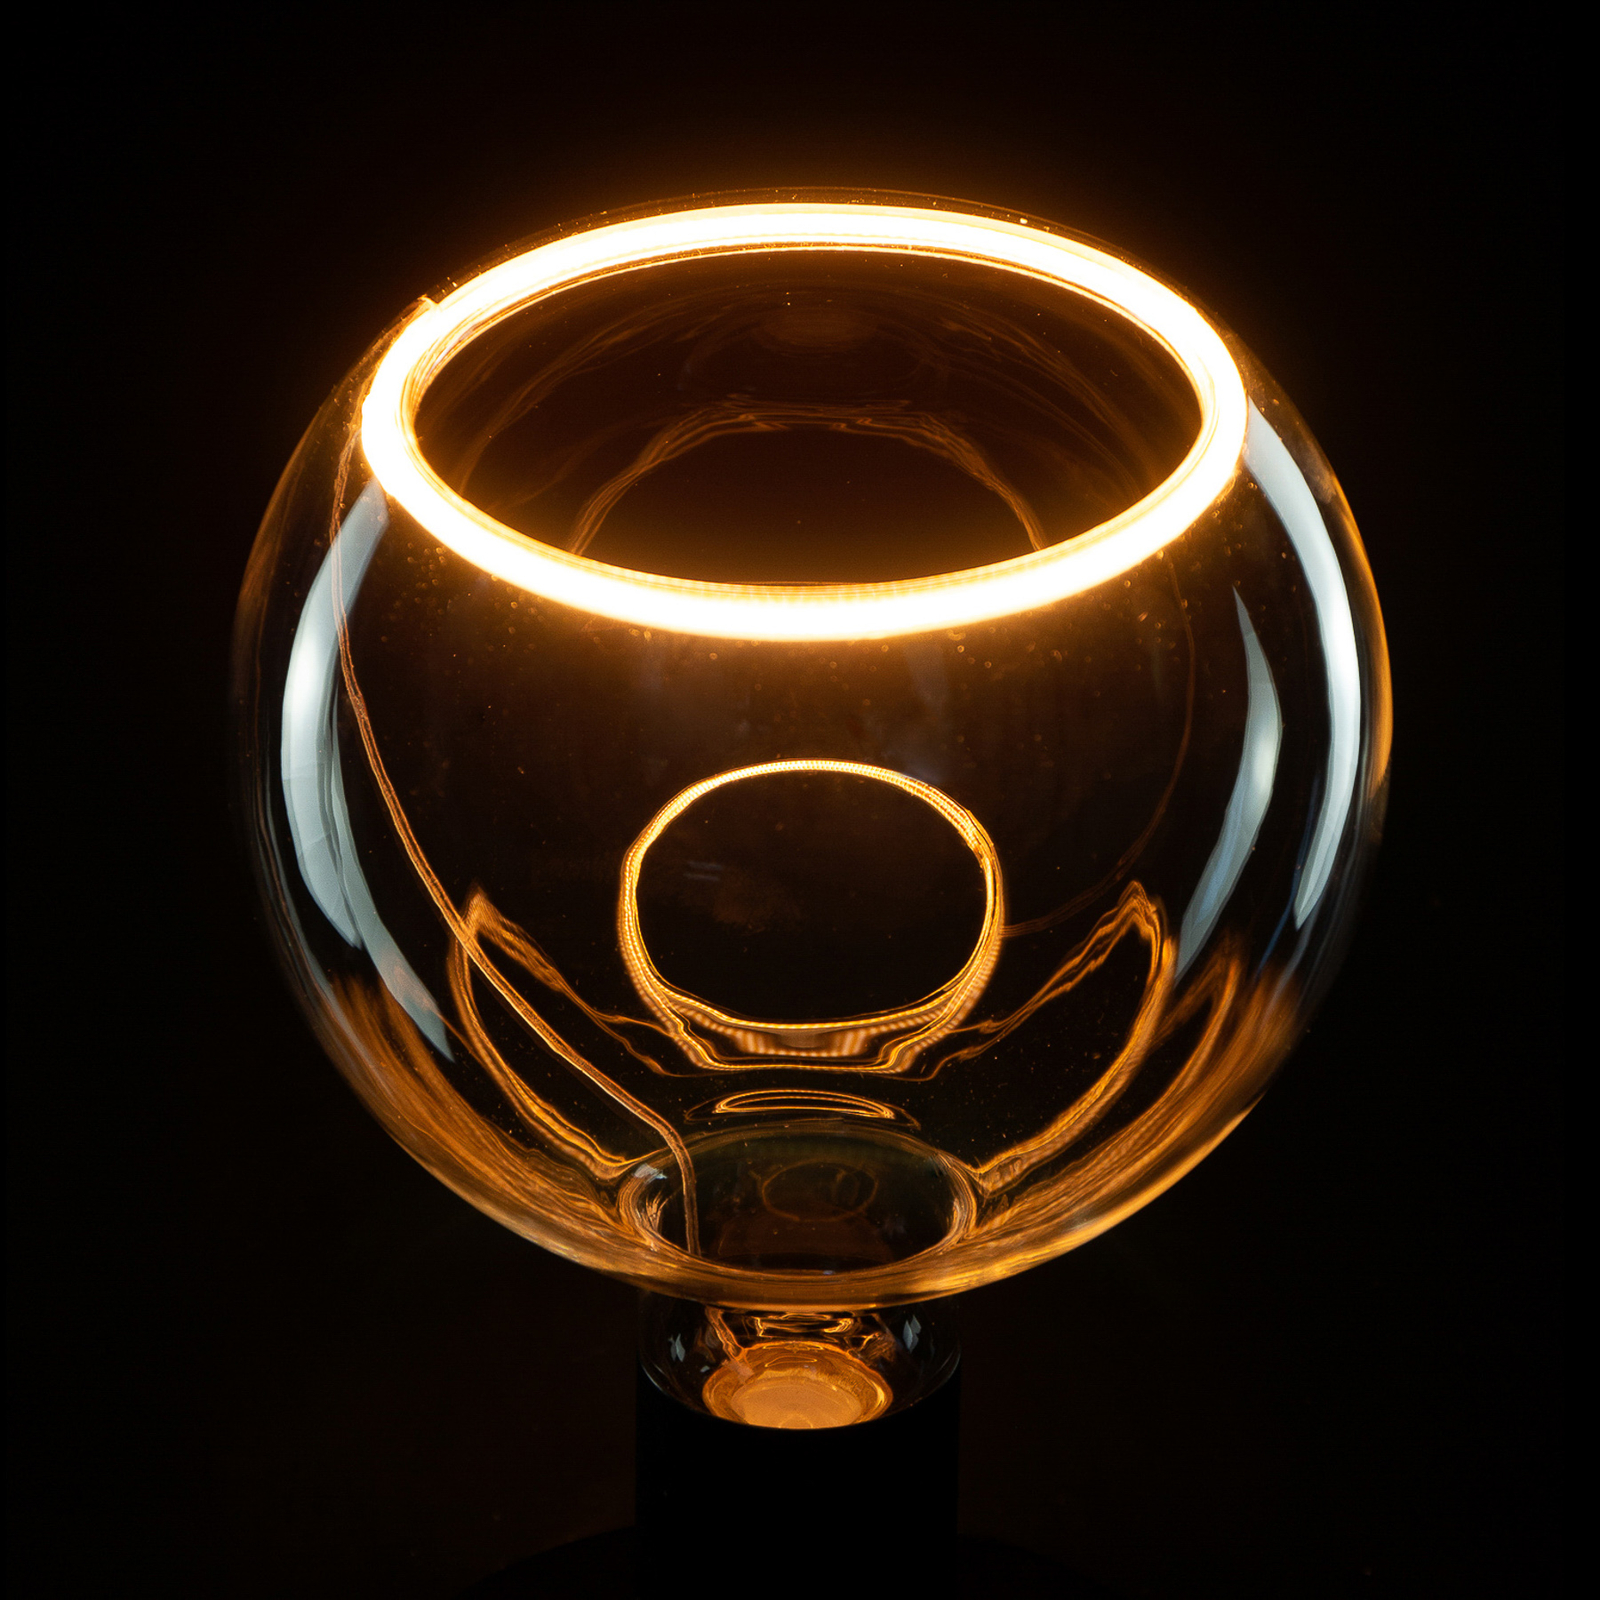 SEGULA floating globe LED bulb G150 E27 4.5W clear